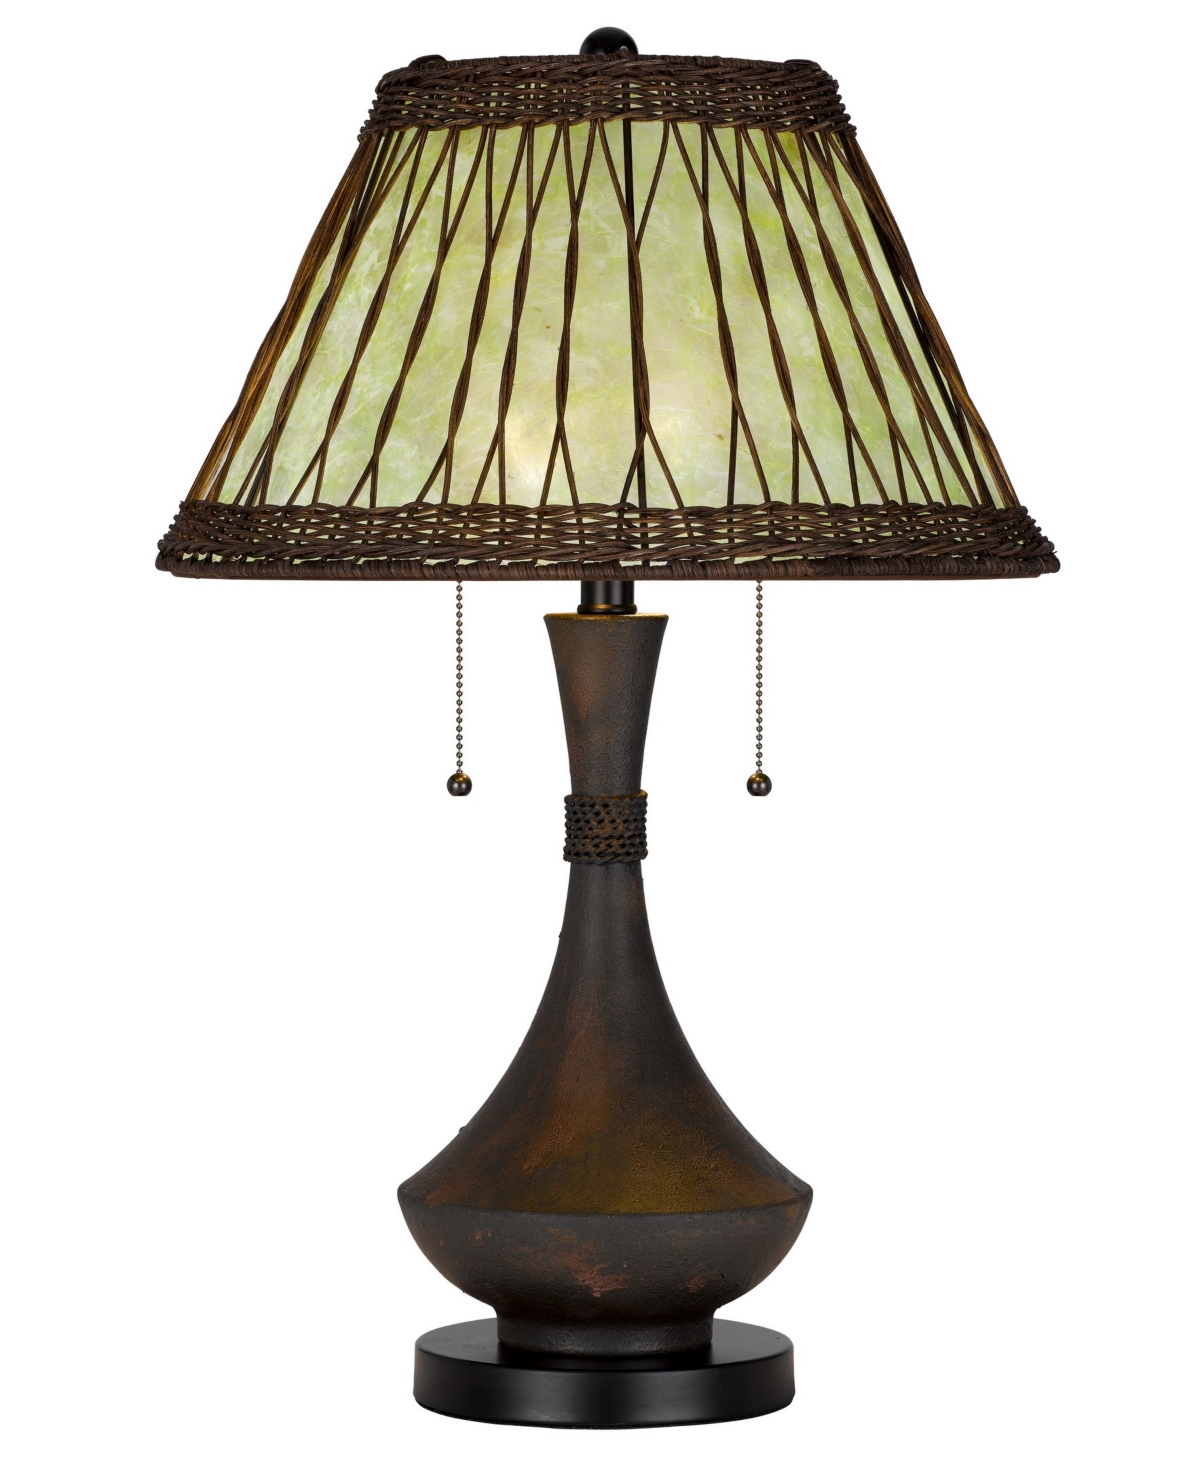 Cal Lighting 25.5" Height Metal And Resin Table Lamp In Dark Bronze